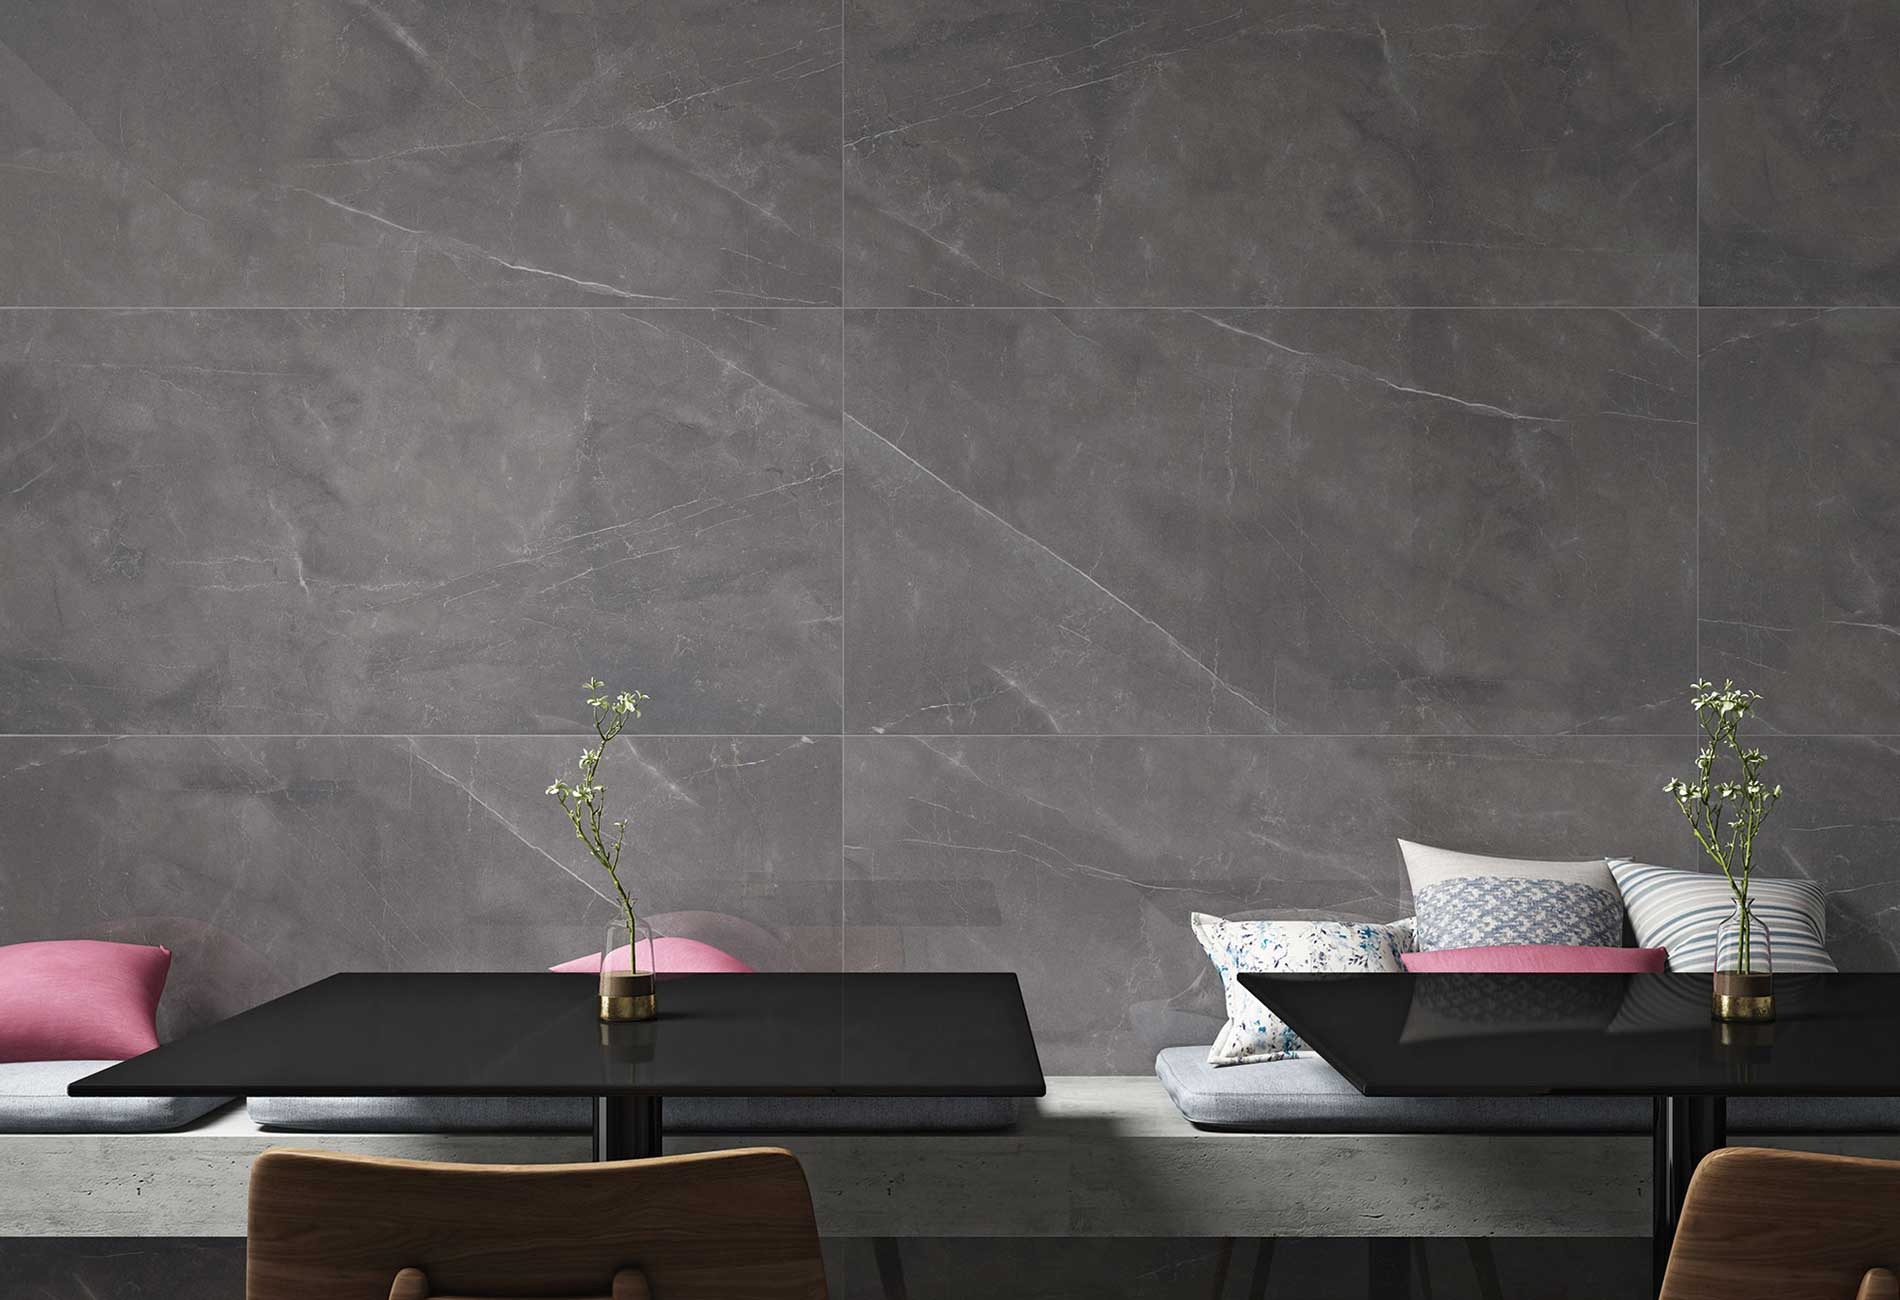 Gạch khổ lớn màu xám mã LUARMANI GRIS với bề mặt bóng là lựa chọn hoàn hảo để làm nổi bật không gian với phong cách trang nhã, sang trọng trong việc ốp tường